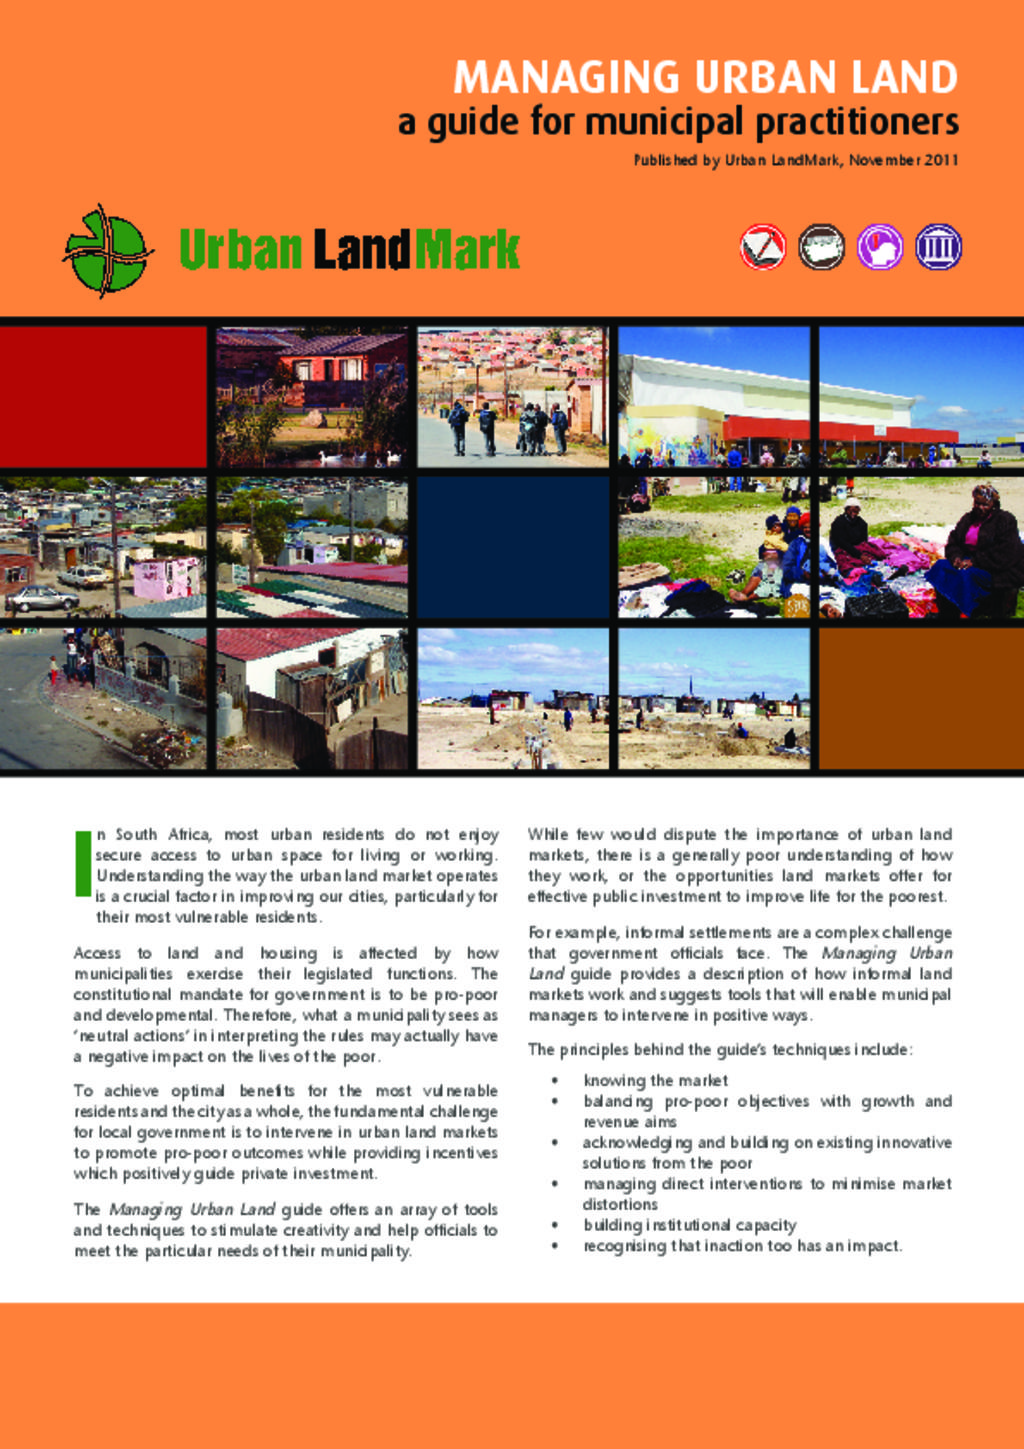 Managing urban land guide